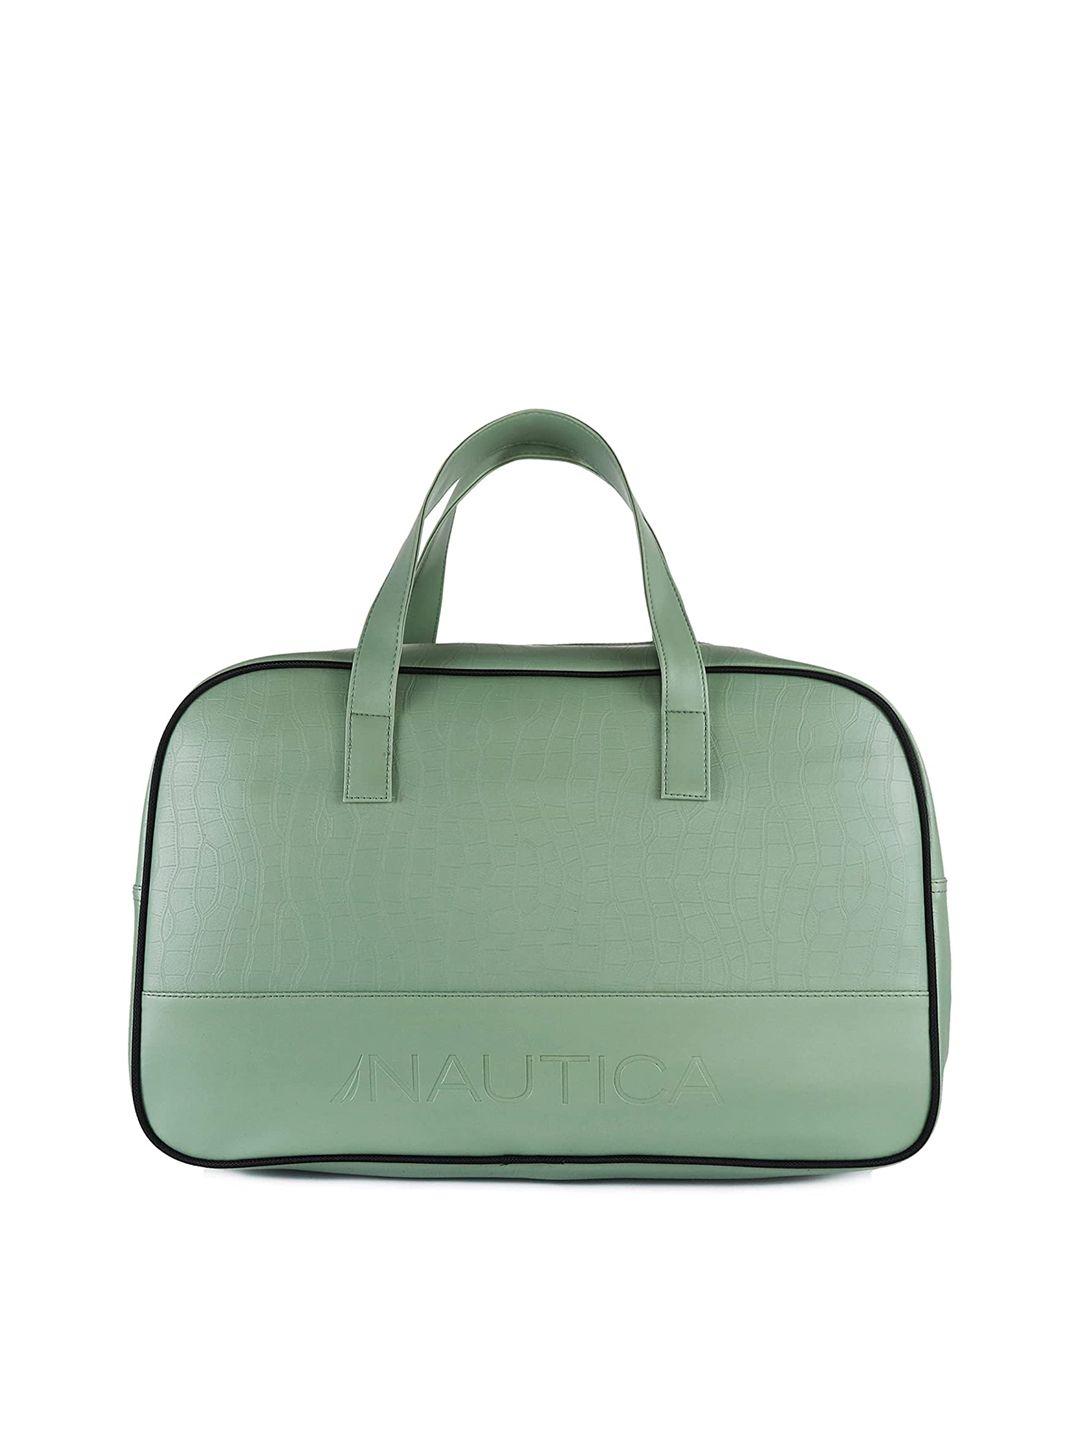 nautica leather medium duffel bag